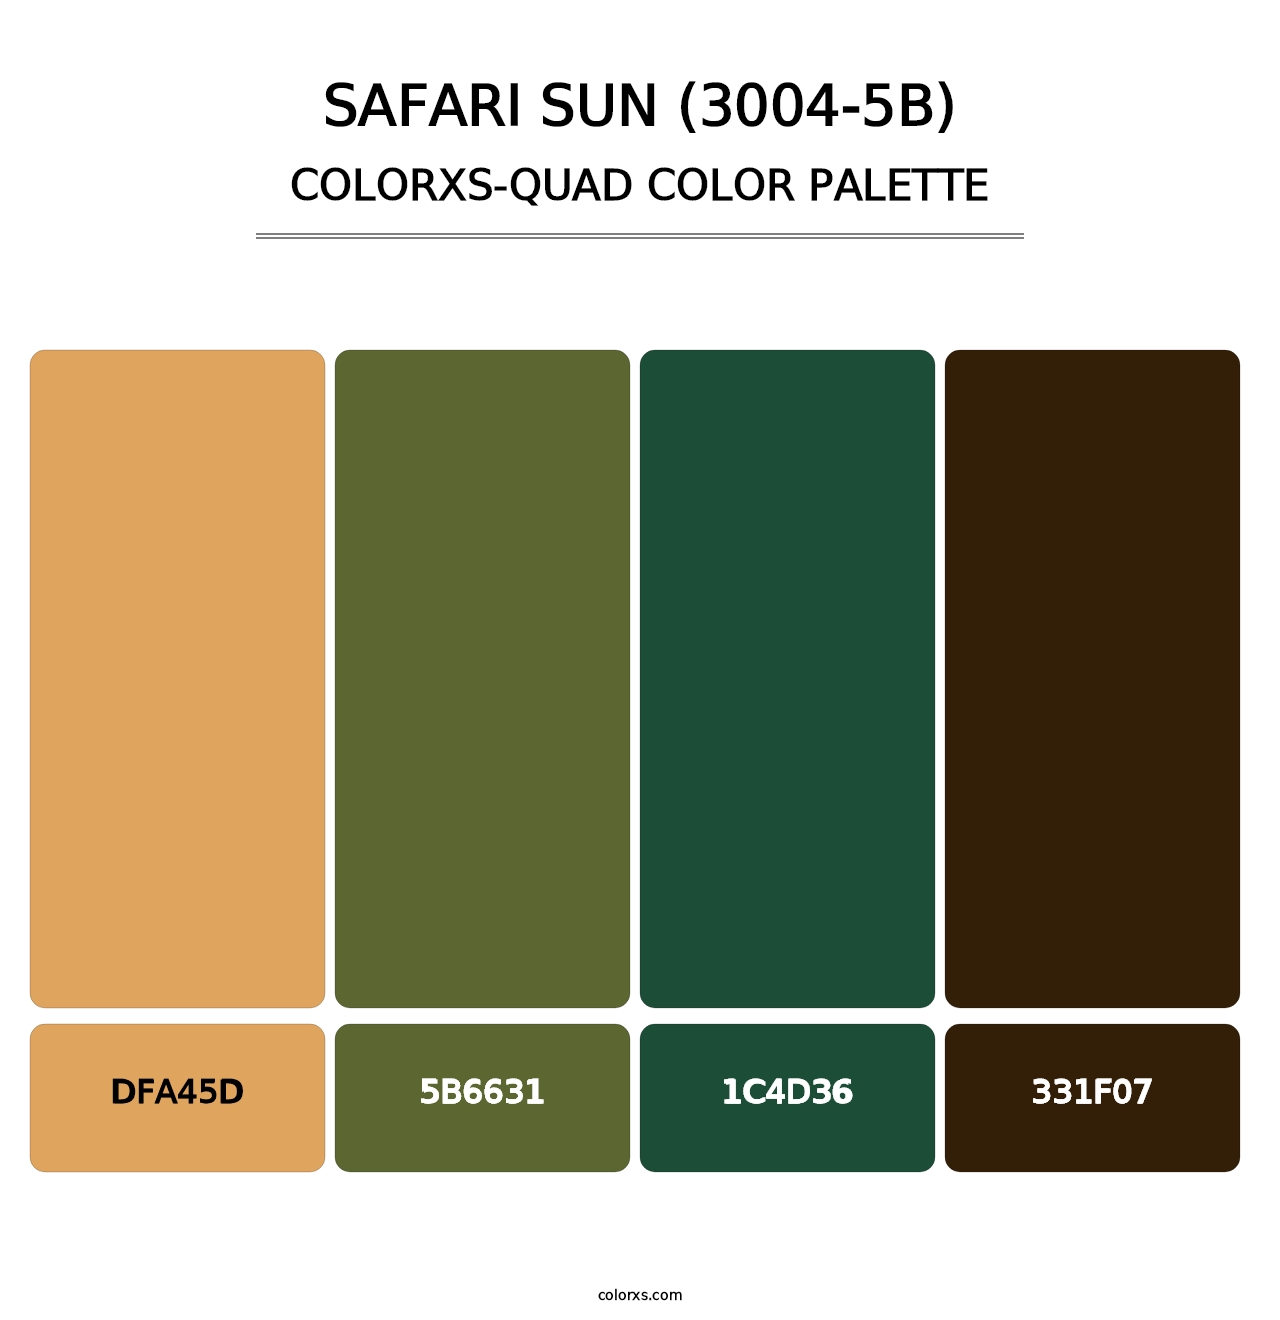 Safari Sun (3004-5B) - Colorxs Quad Palette